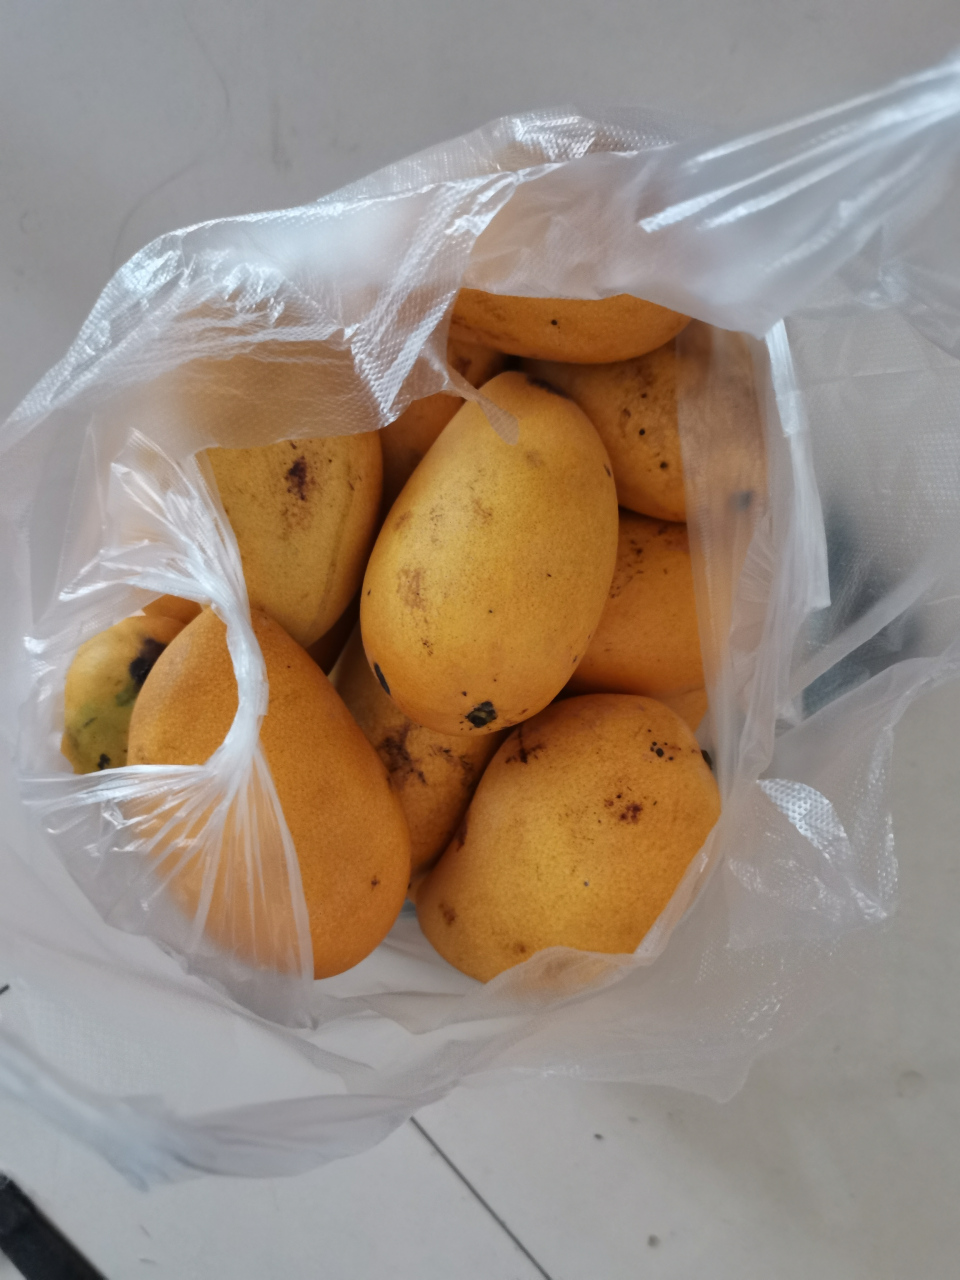 昨天10块钱路边小货车上买了一袋子芒果,称了下4